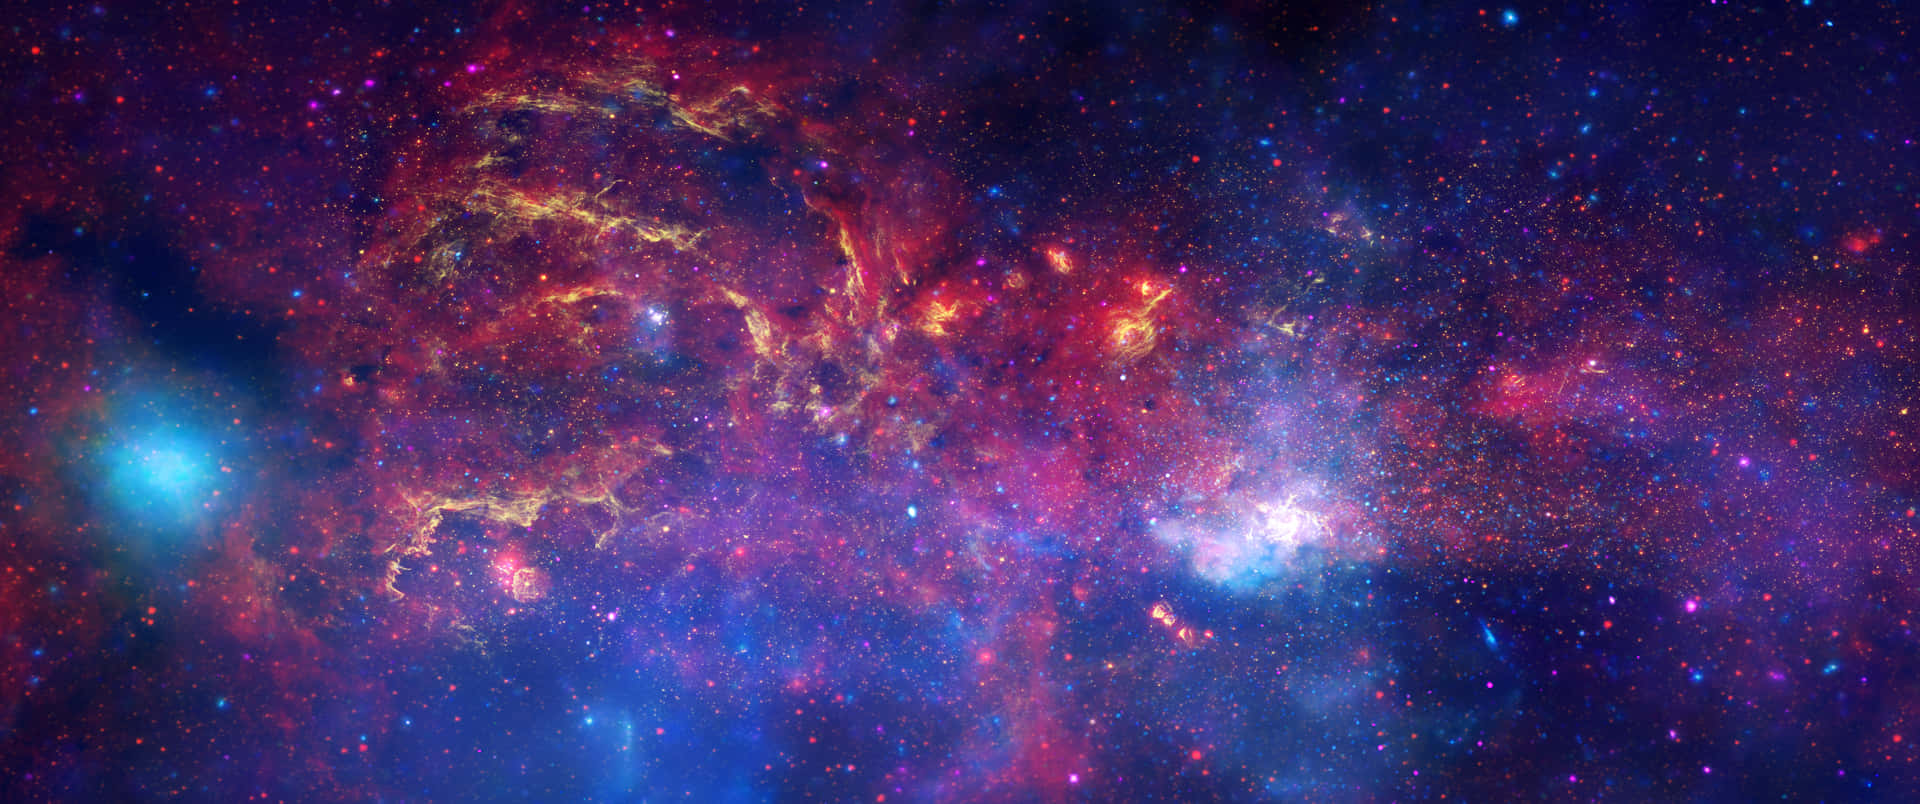 Hình nền vũ trụ 3440x1440 là một sự kết hợp hoàn hảo giữa vô vàn ngôi sao và khung cảnh tuyệt vời của vũ trụ. Hình ảnh này sẽ đưa bạn đến một không gian đầy sức mạnh và vĩ đại. Hãy thưởng thức hình ảnh này và đắm mình trong không gian rộng lớn của vũ trụ.